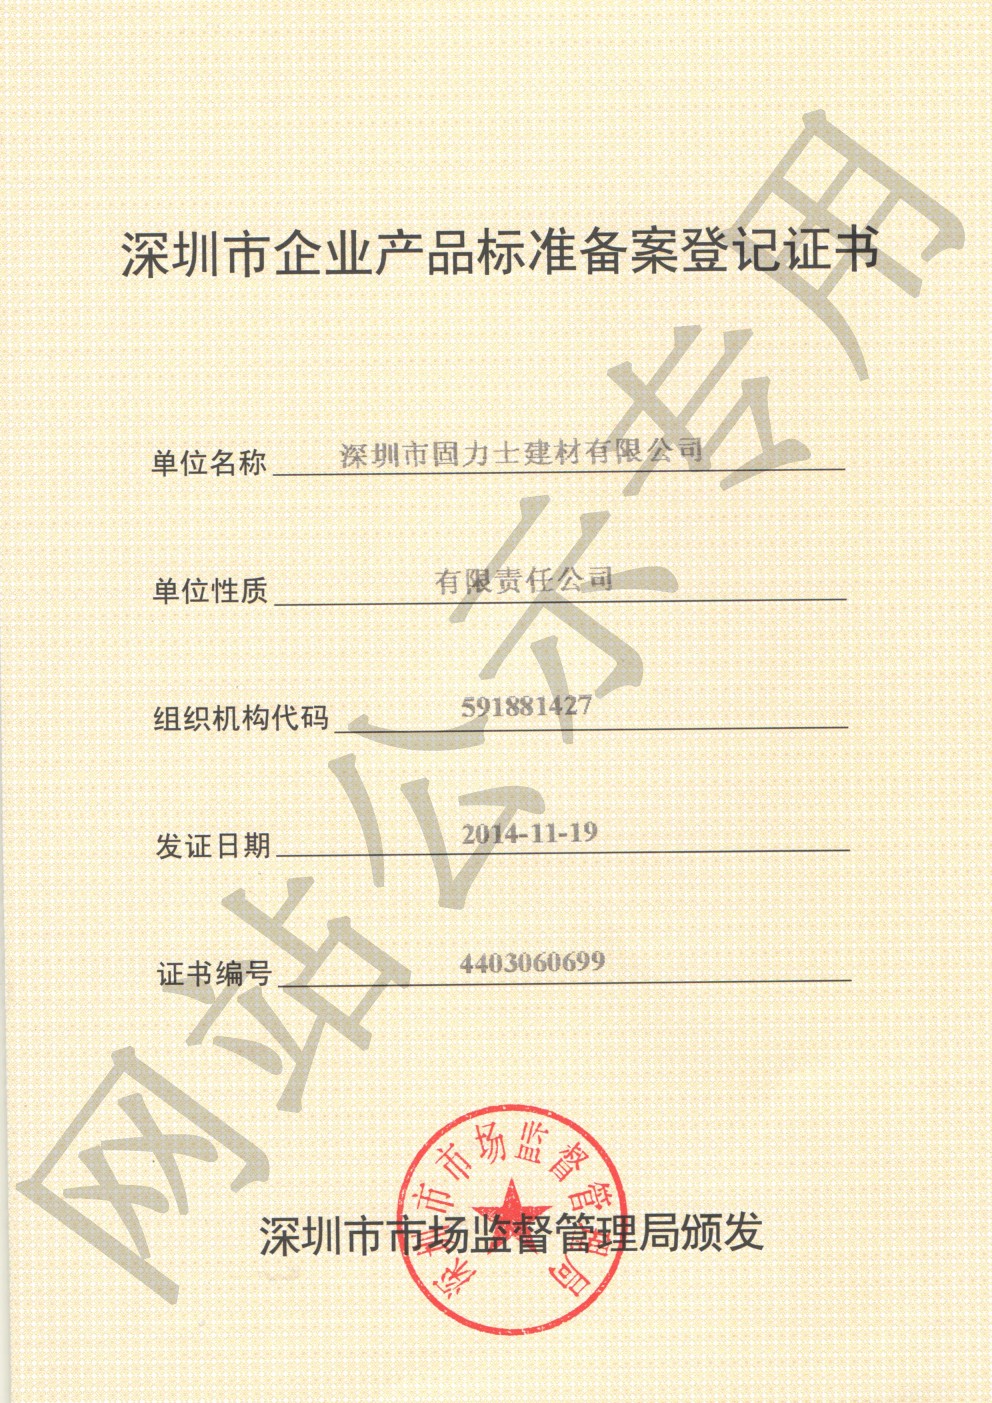 紫金企业产品标准登记证书